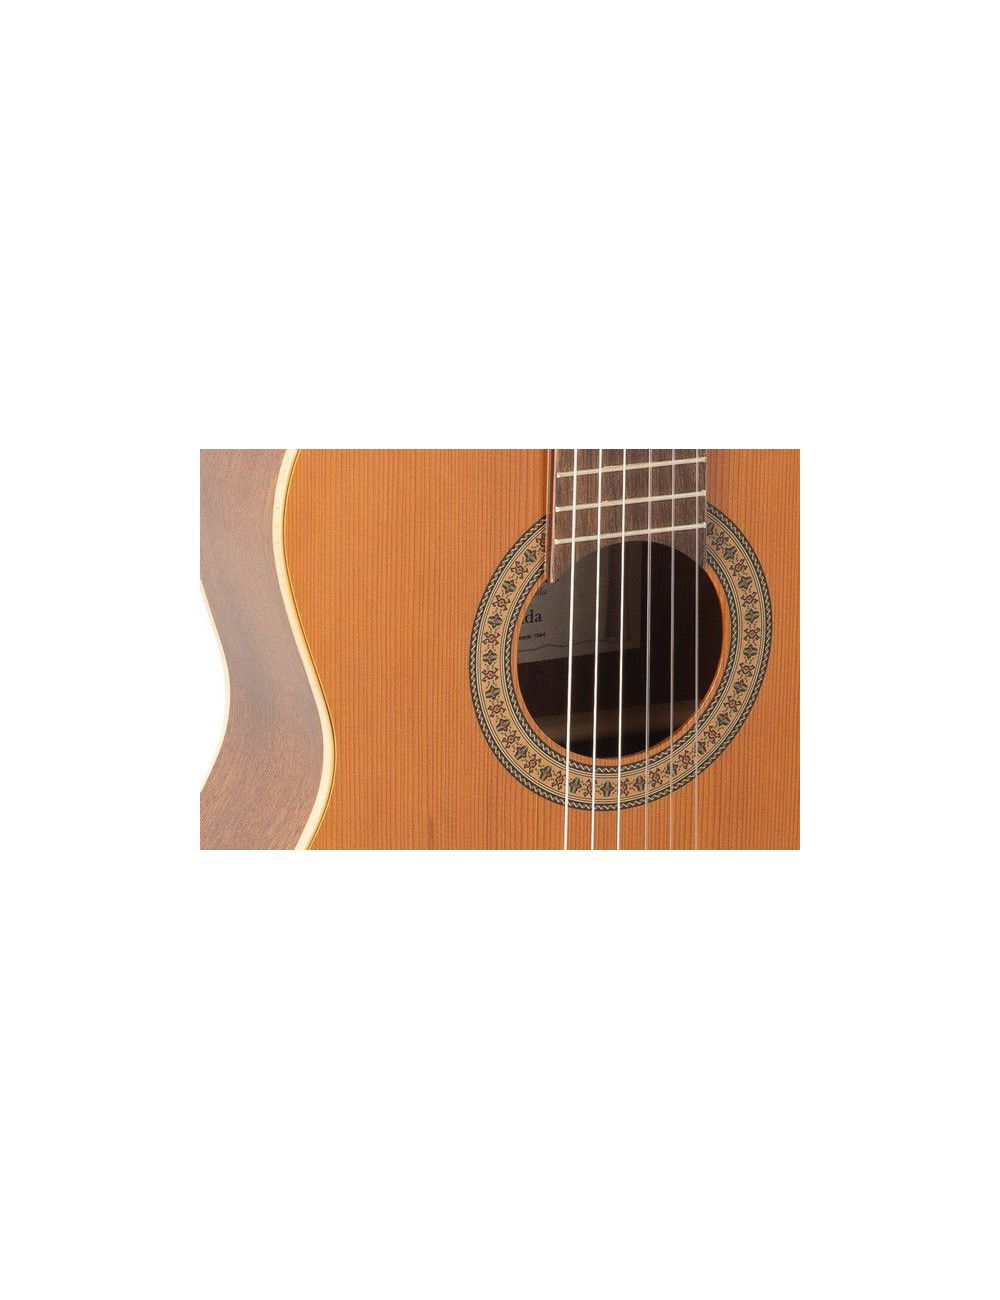 Admira GRANADA EF Electro Classical guitar ADM0650EF Electro-Classical